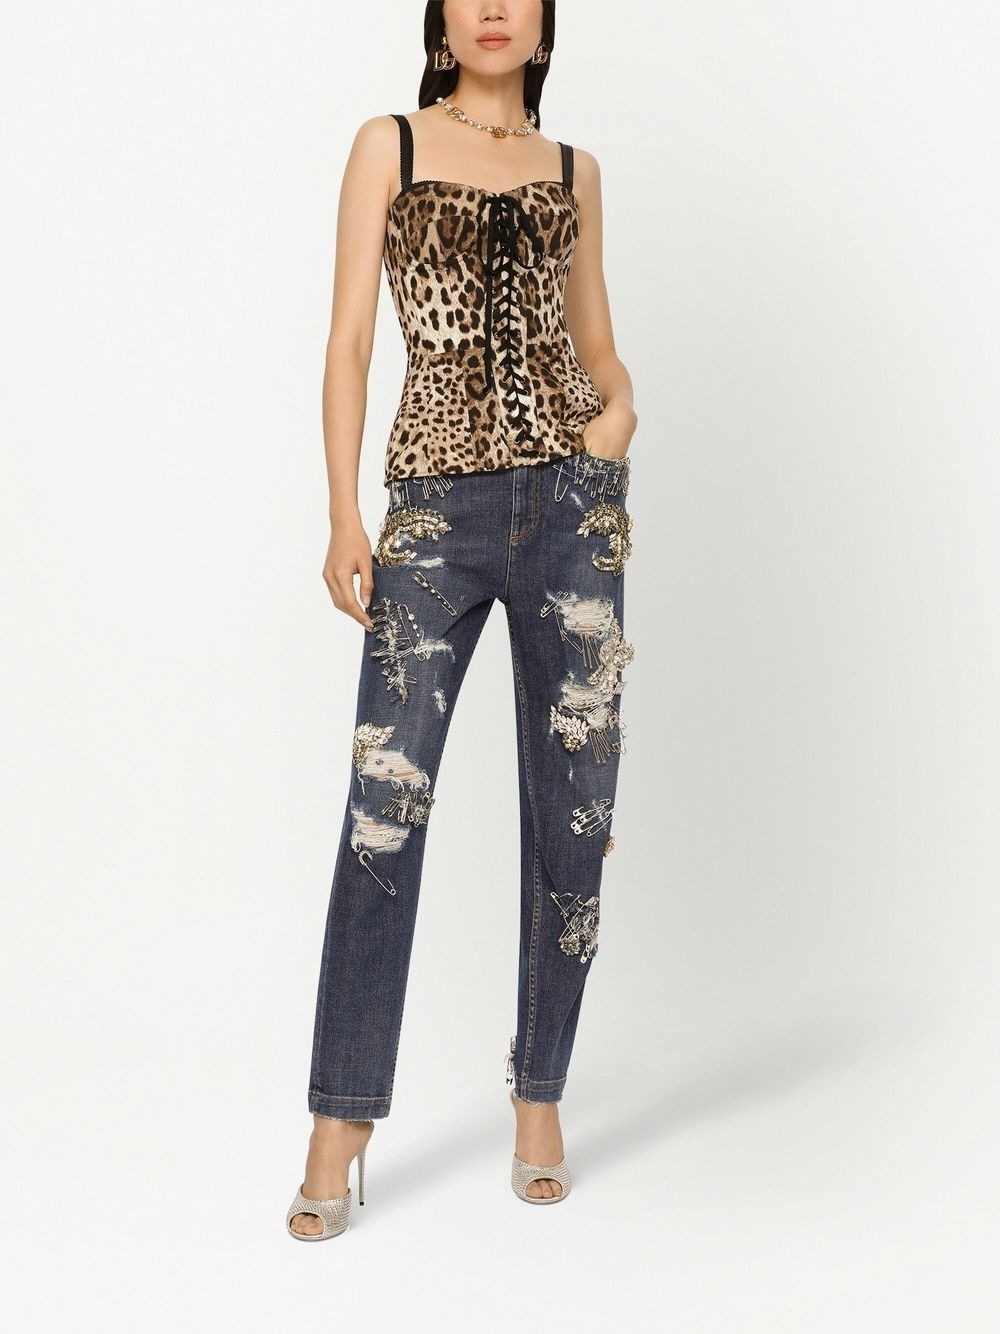 leopard-print lace-up corset - 3